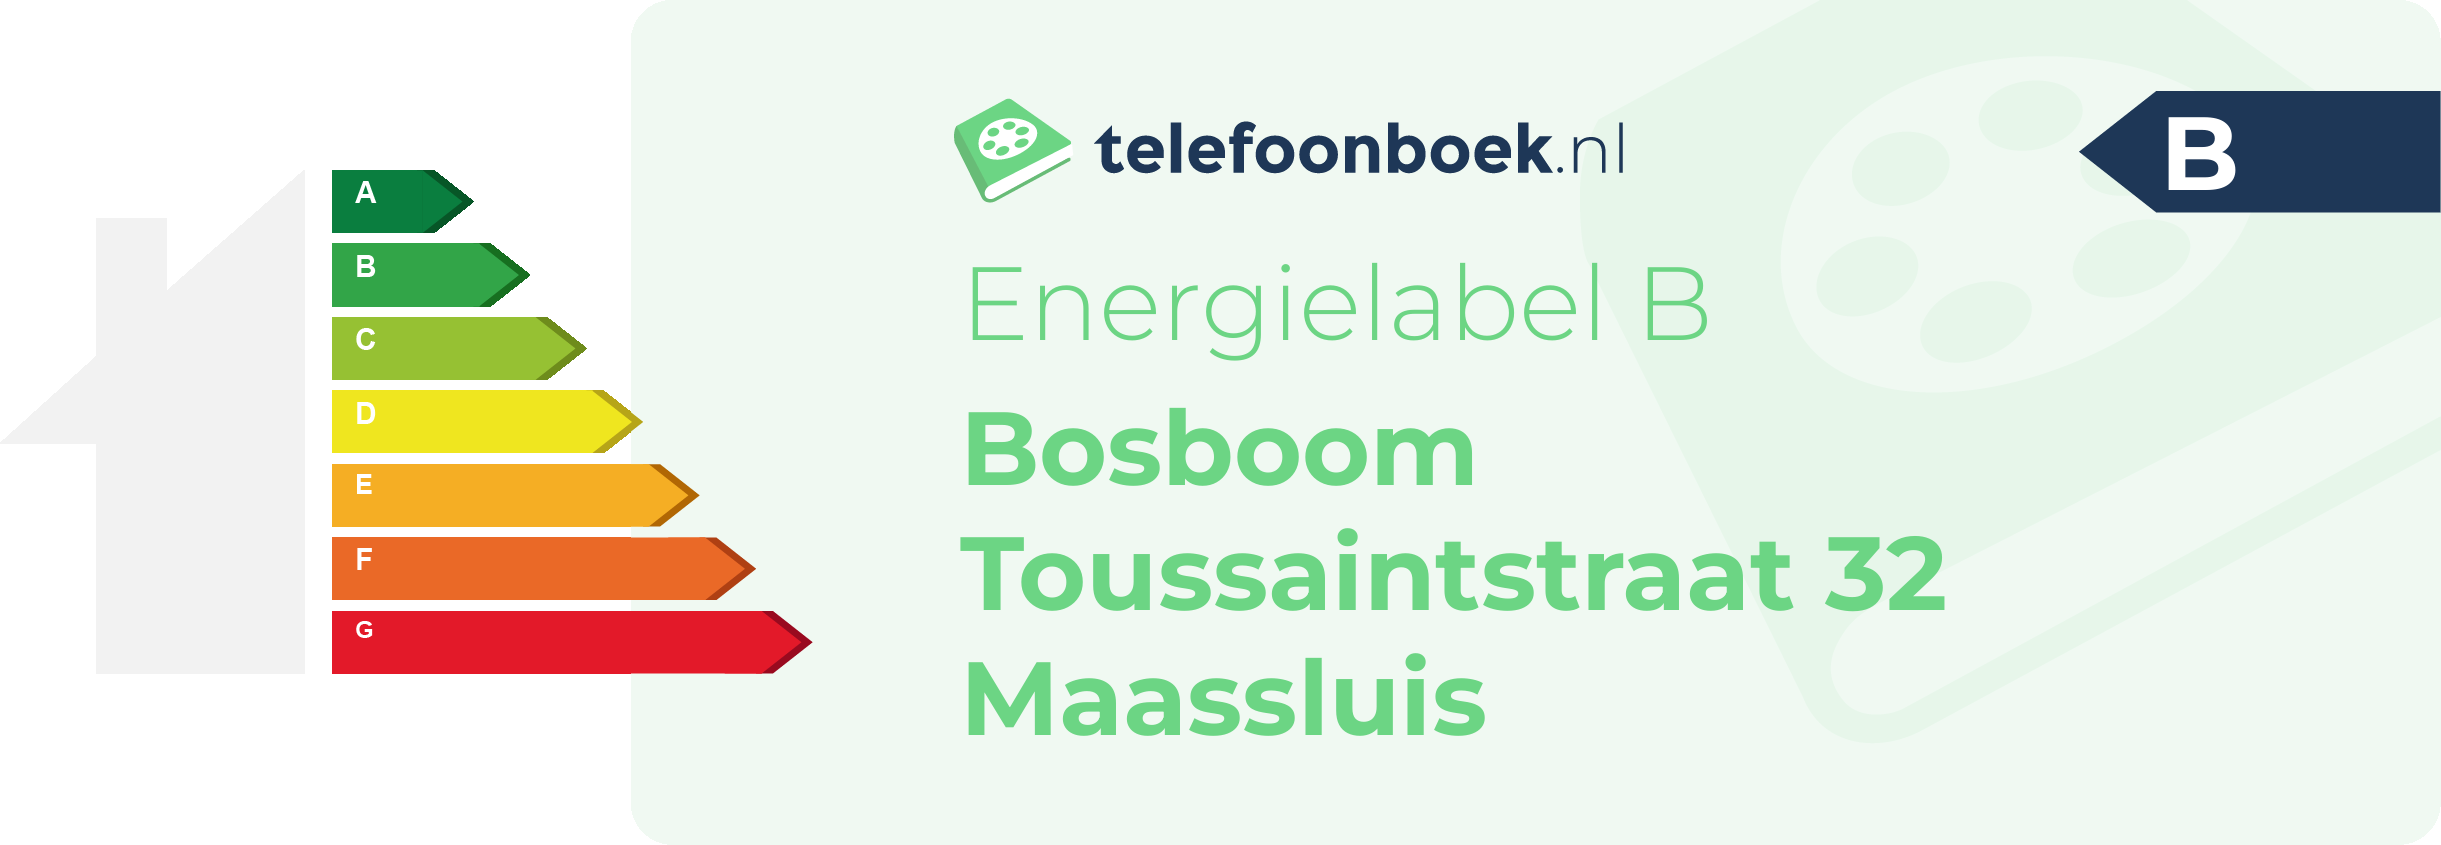 Energielabel Bosboom Toussaintstraat 32 Maassluis